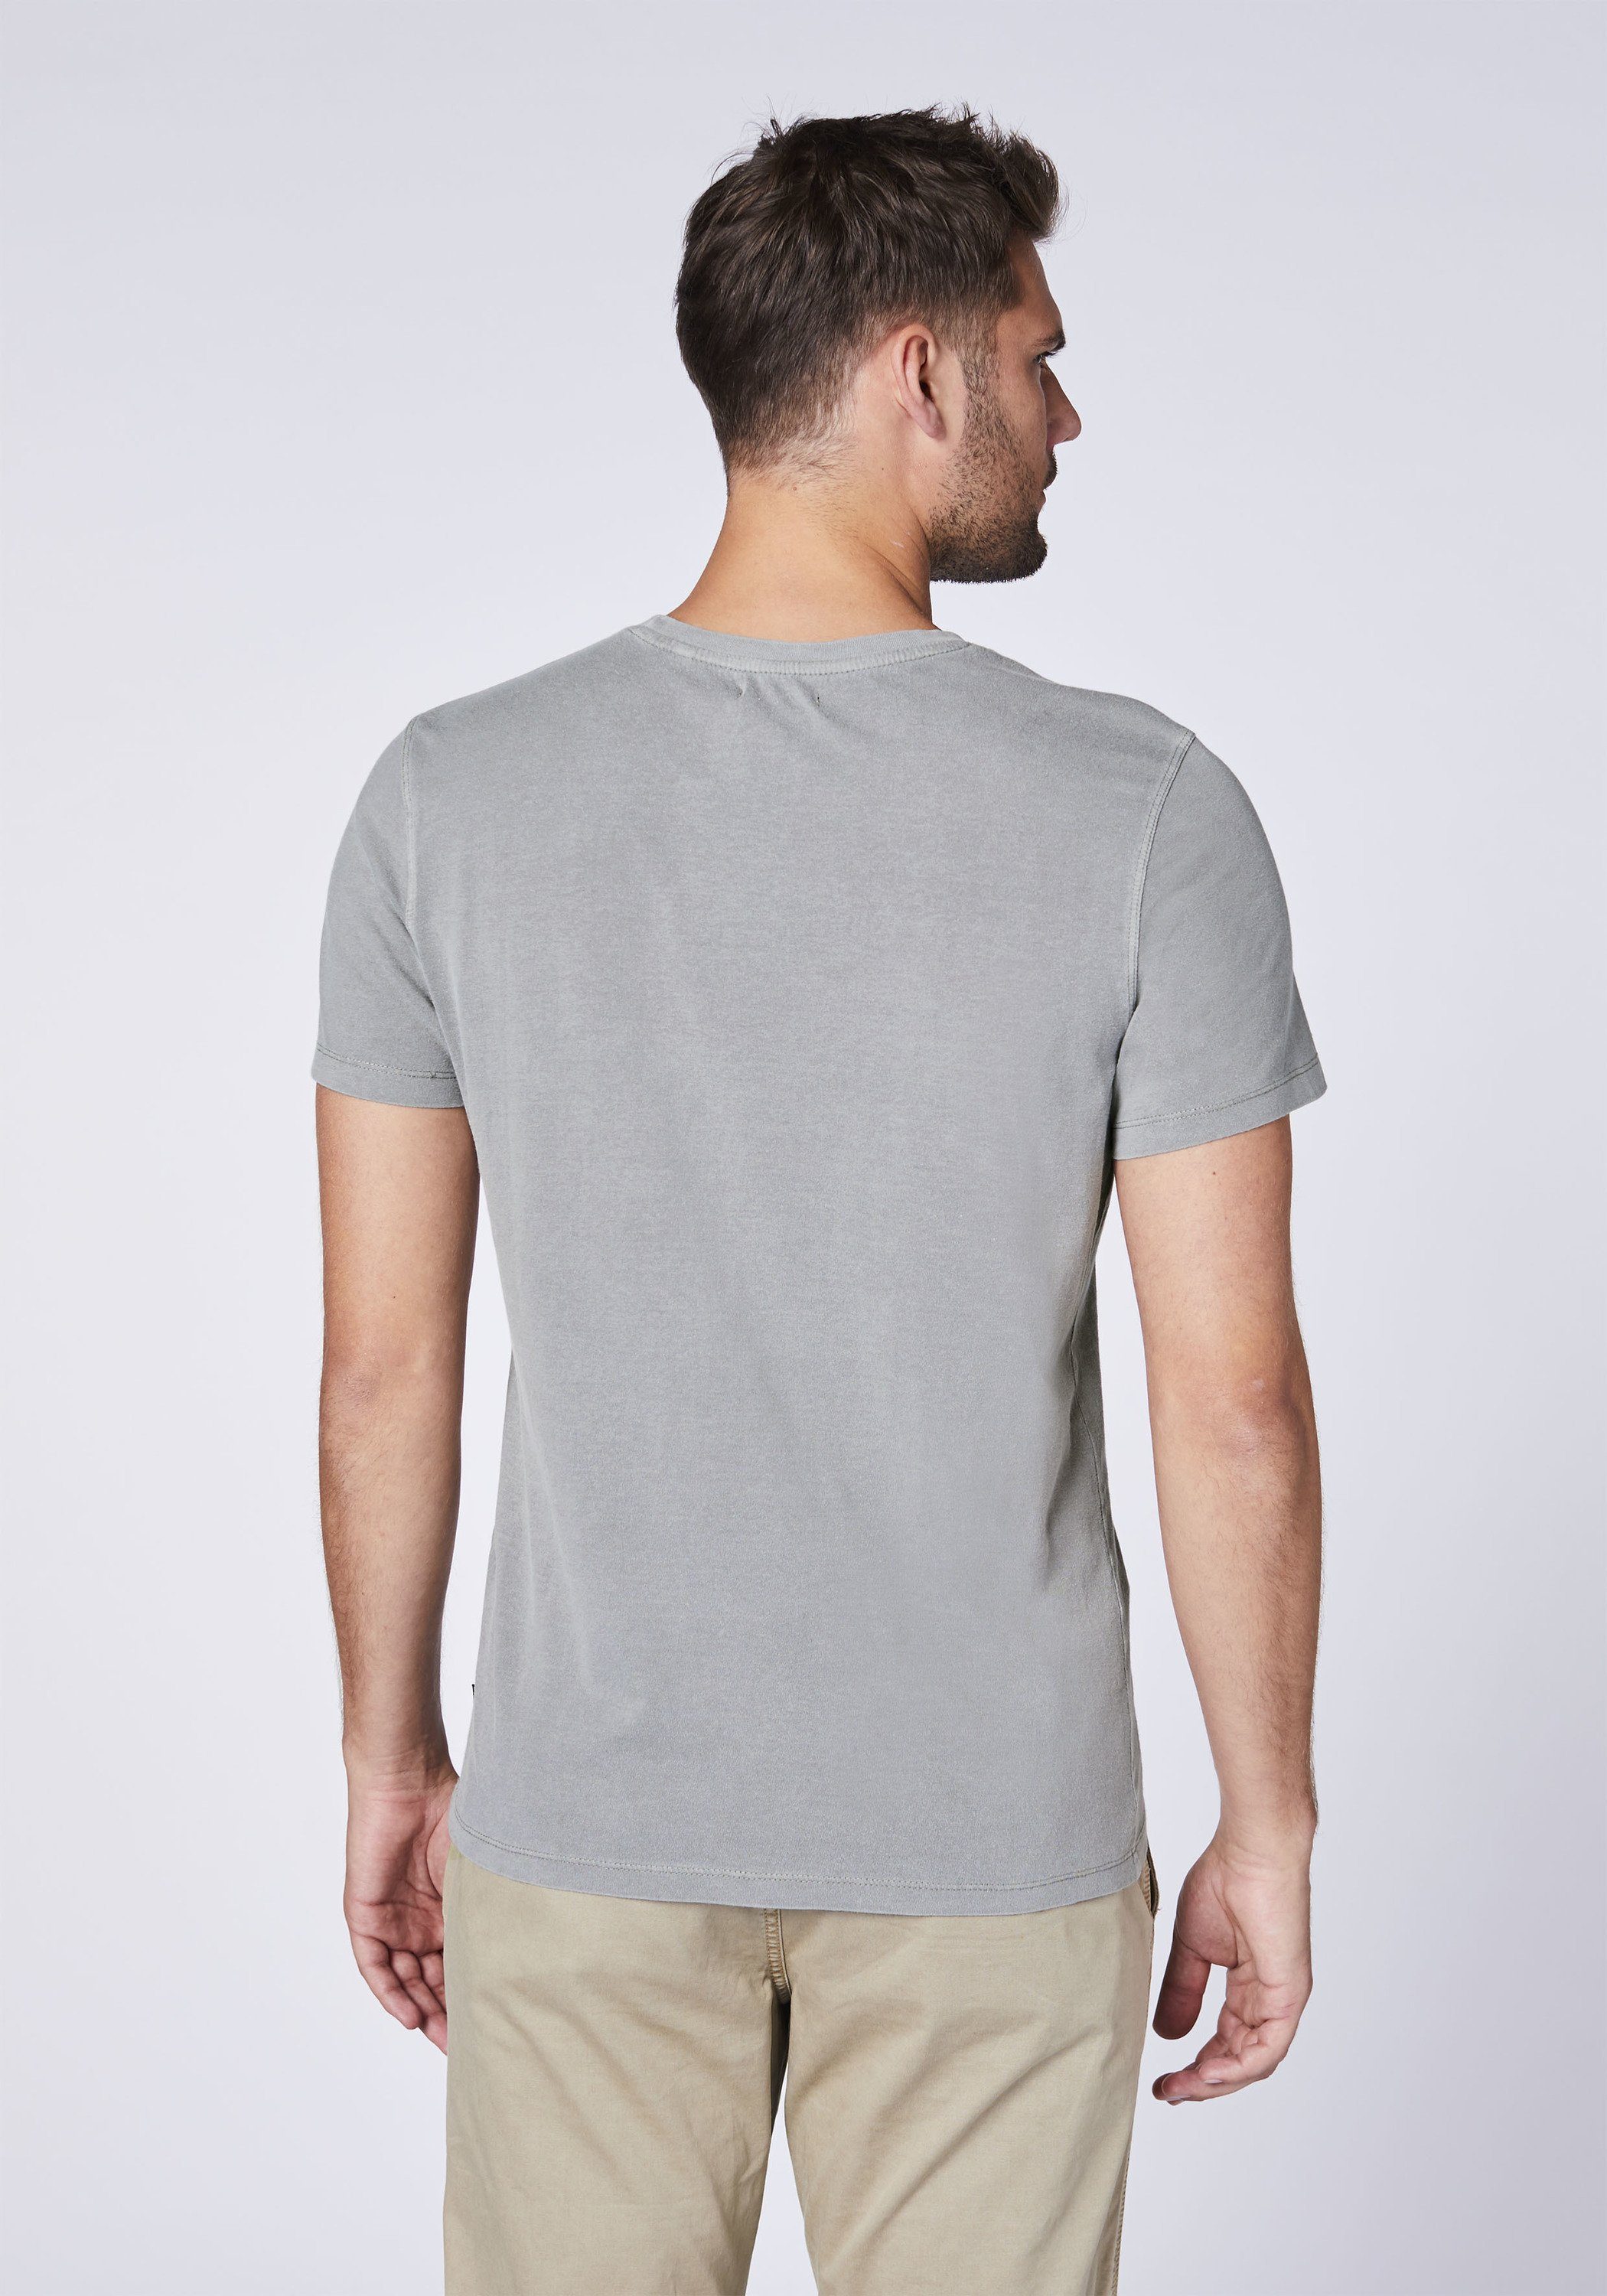 Wet Print-Shirt Chiemsee 1 Weather Baumwolle T-Shirt aus